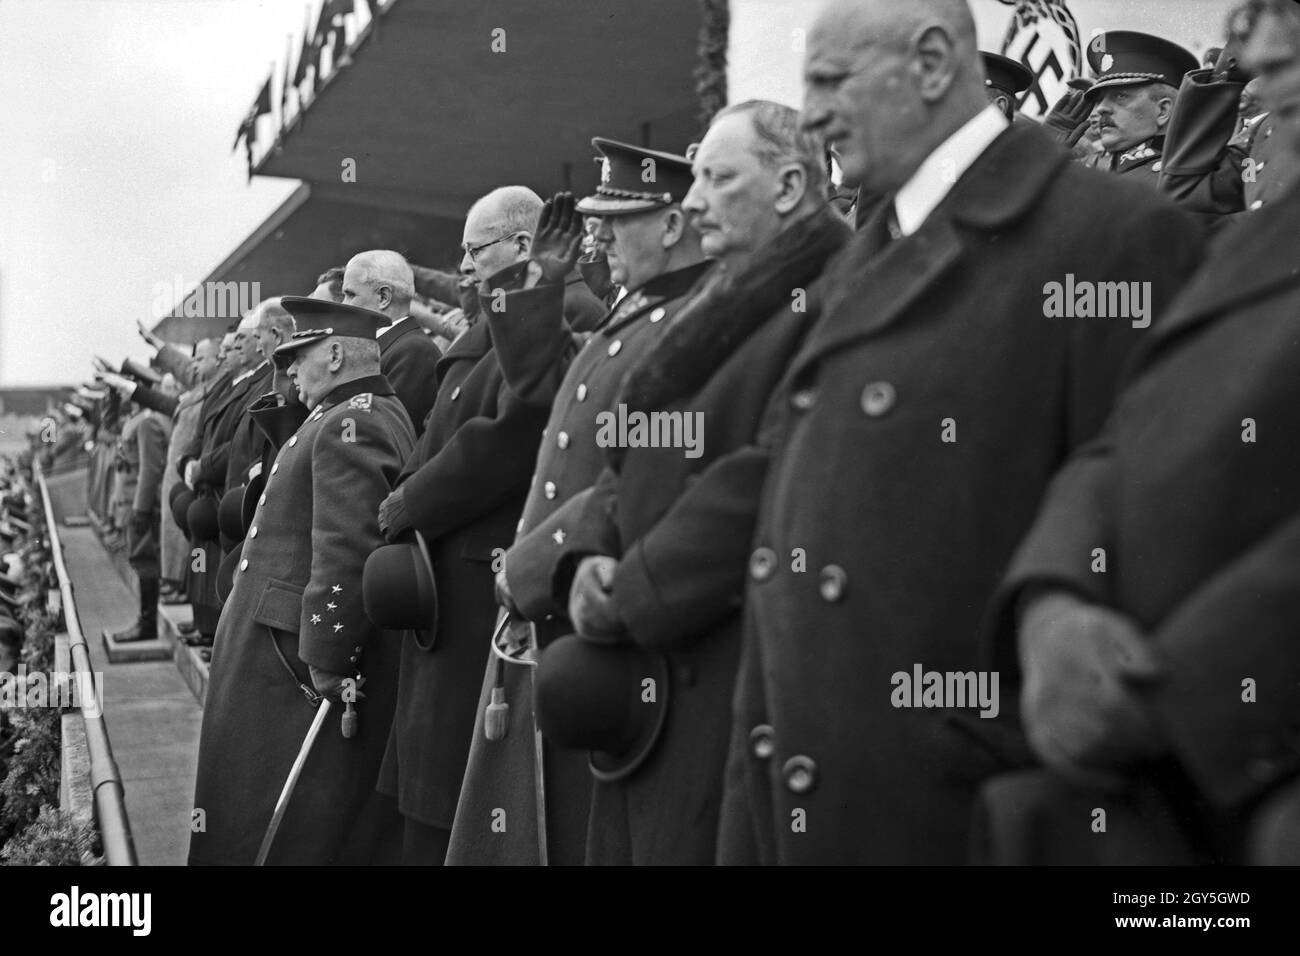 Originalbildunterschrift: Prag, 20. April im Sokol Stadion. Während des Deutschlandlieds, General Sirory mit vier Herren vom Armeestab. Stock Photo